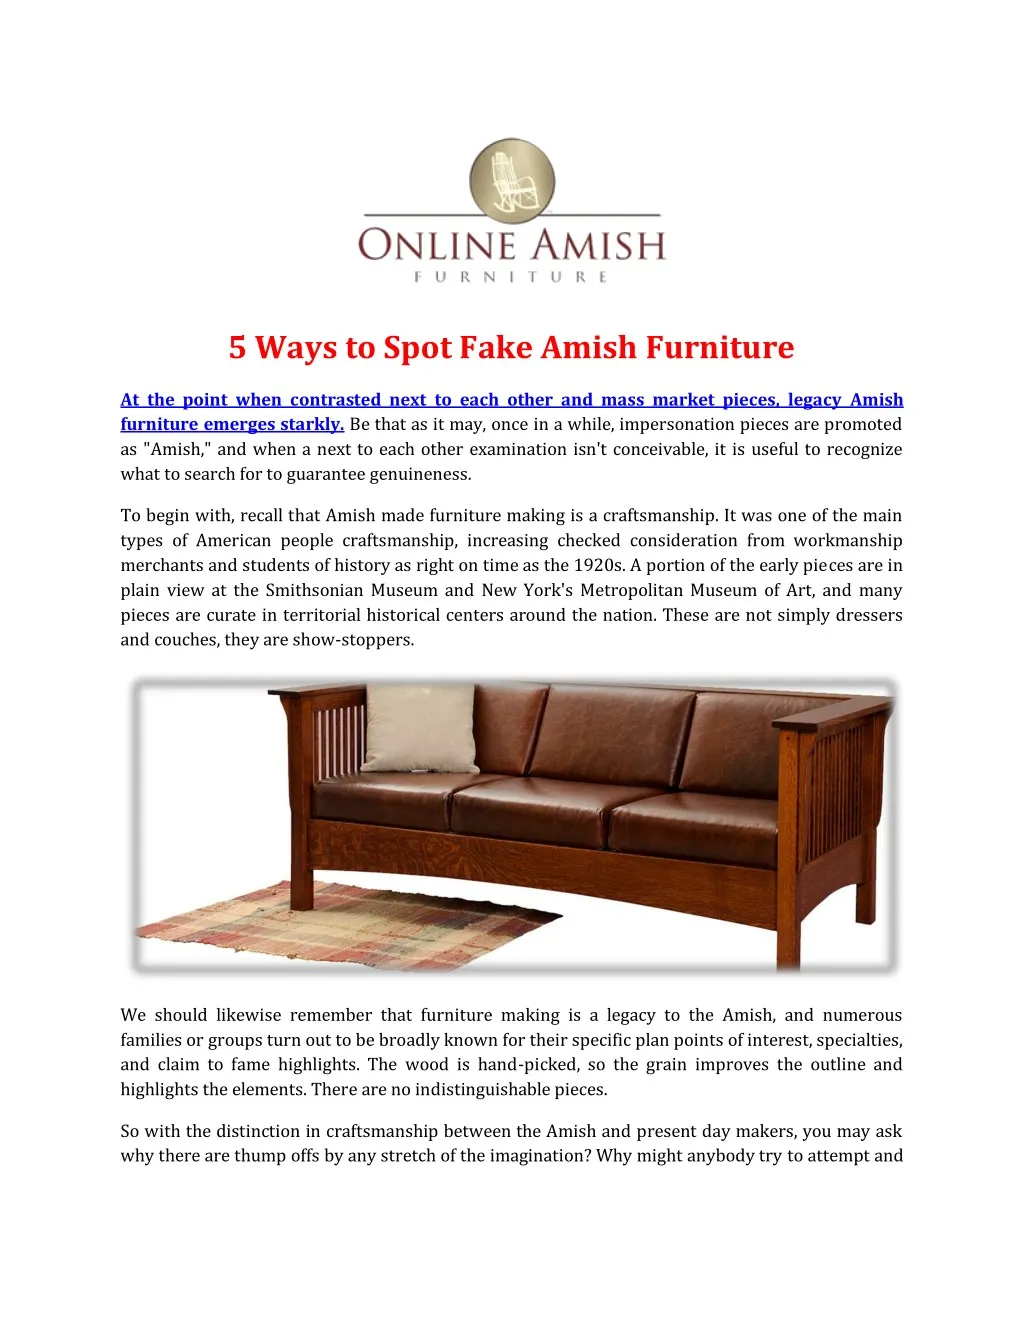 5 ways to spot fake amish furniture